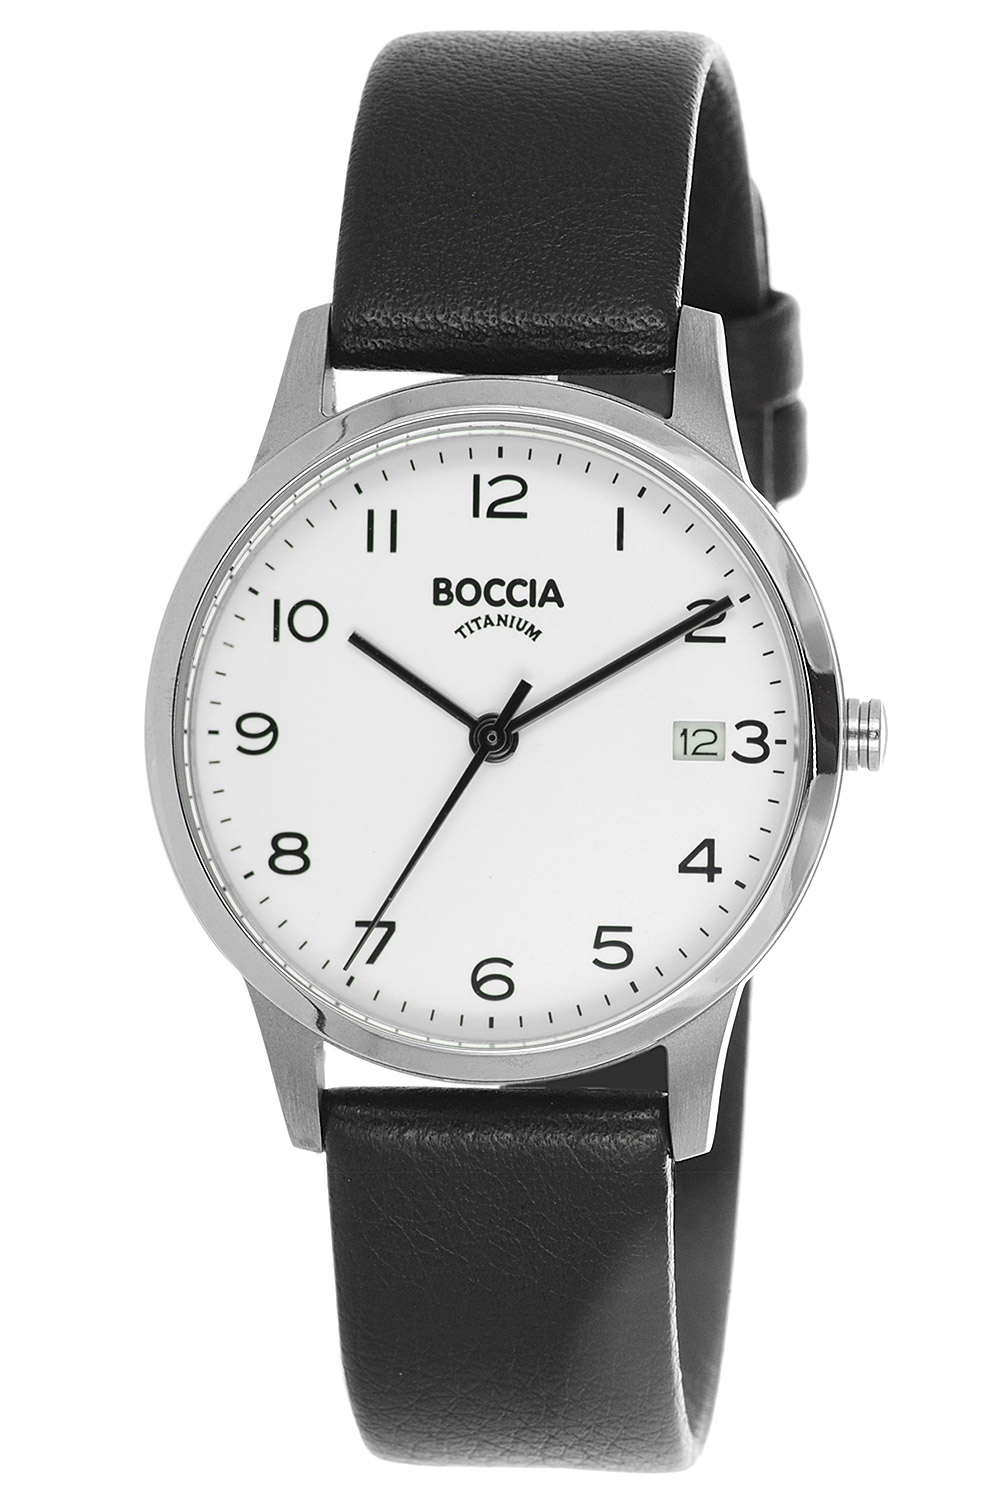 Boccia Damenuhren günstig online kaufen • uhrcenter Uhren Shop